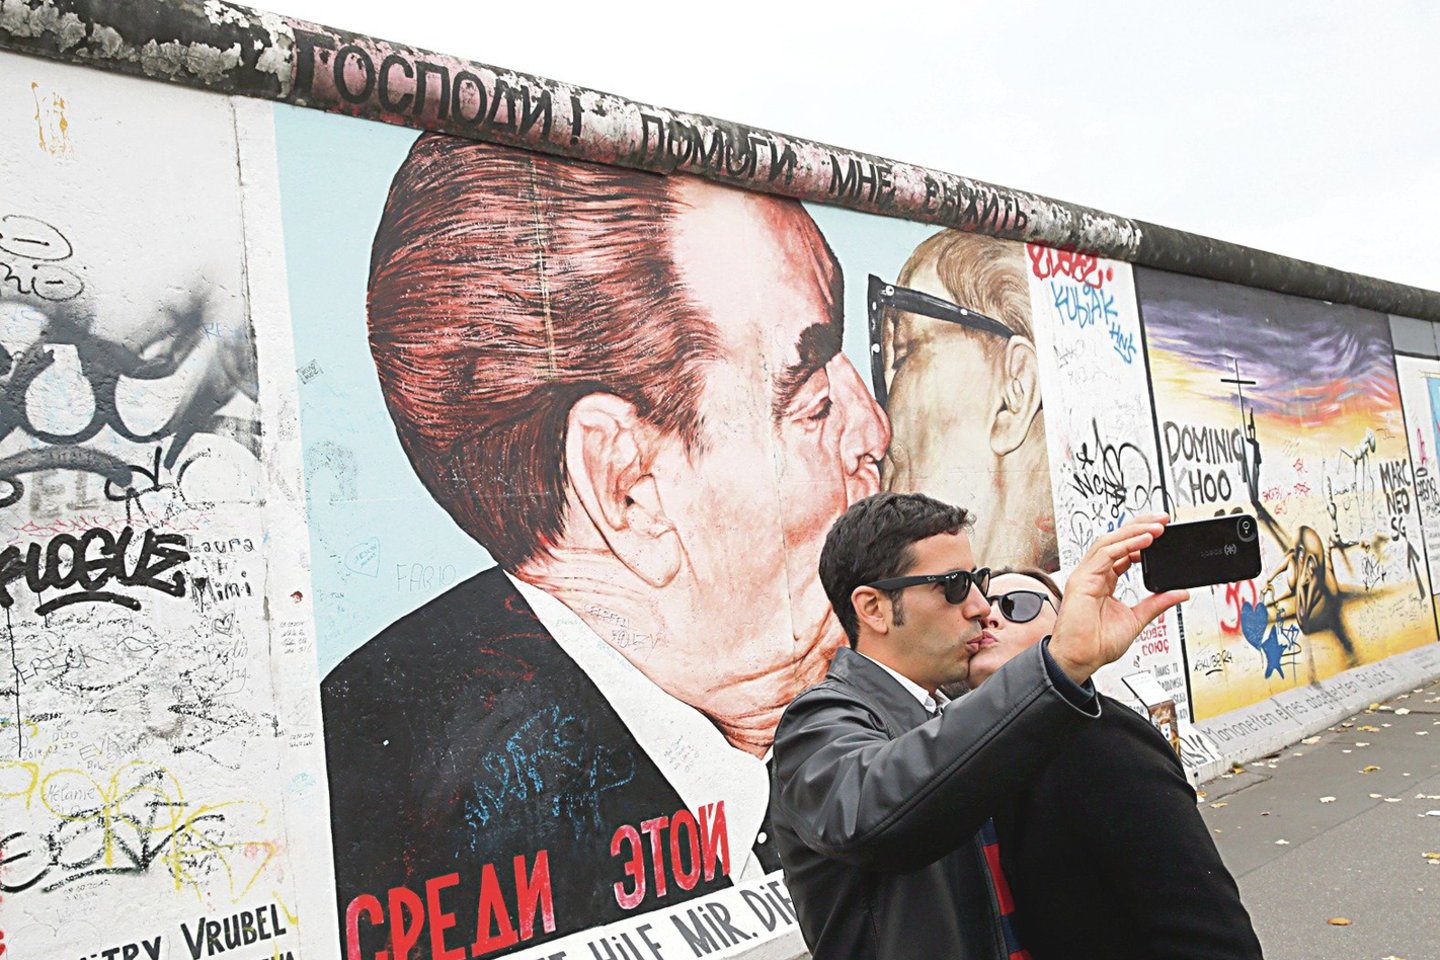  Berlyno siena šiais laikais - laisvės ir istorijos paminklas.